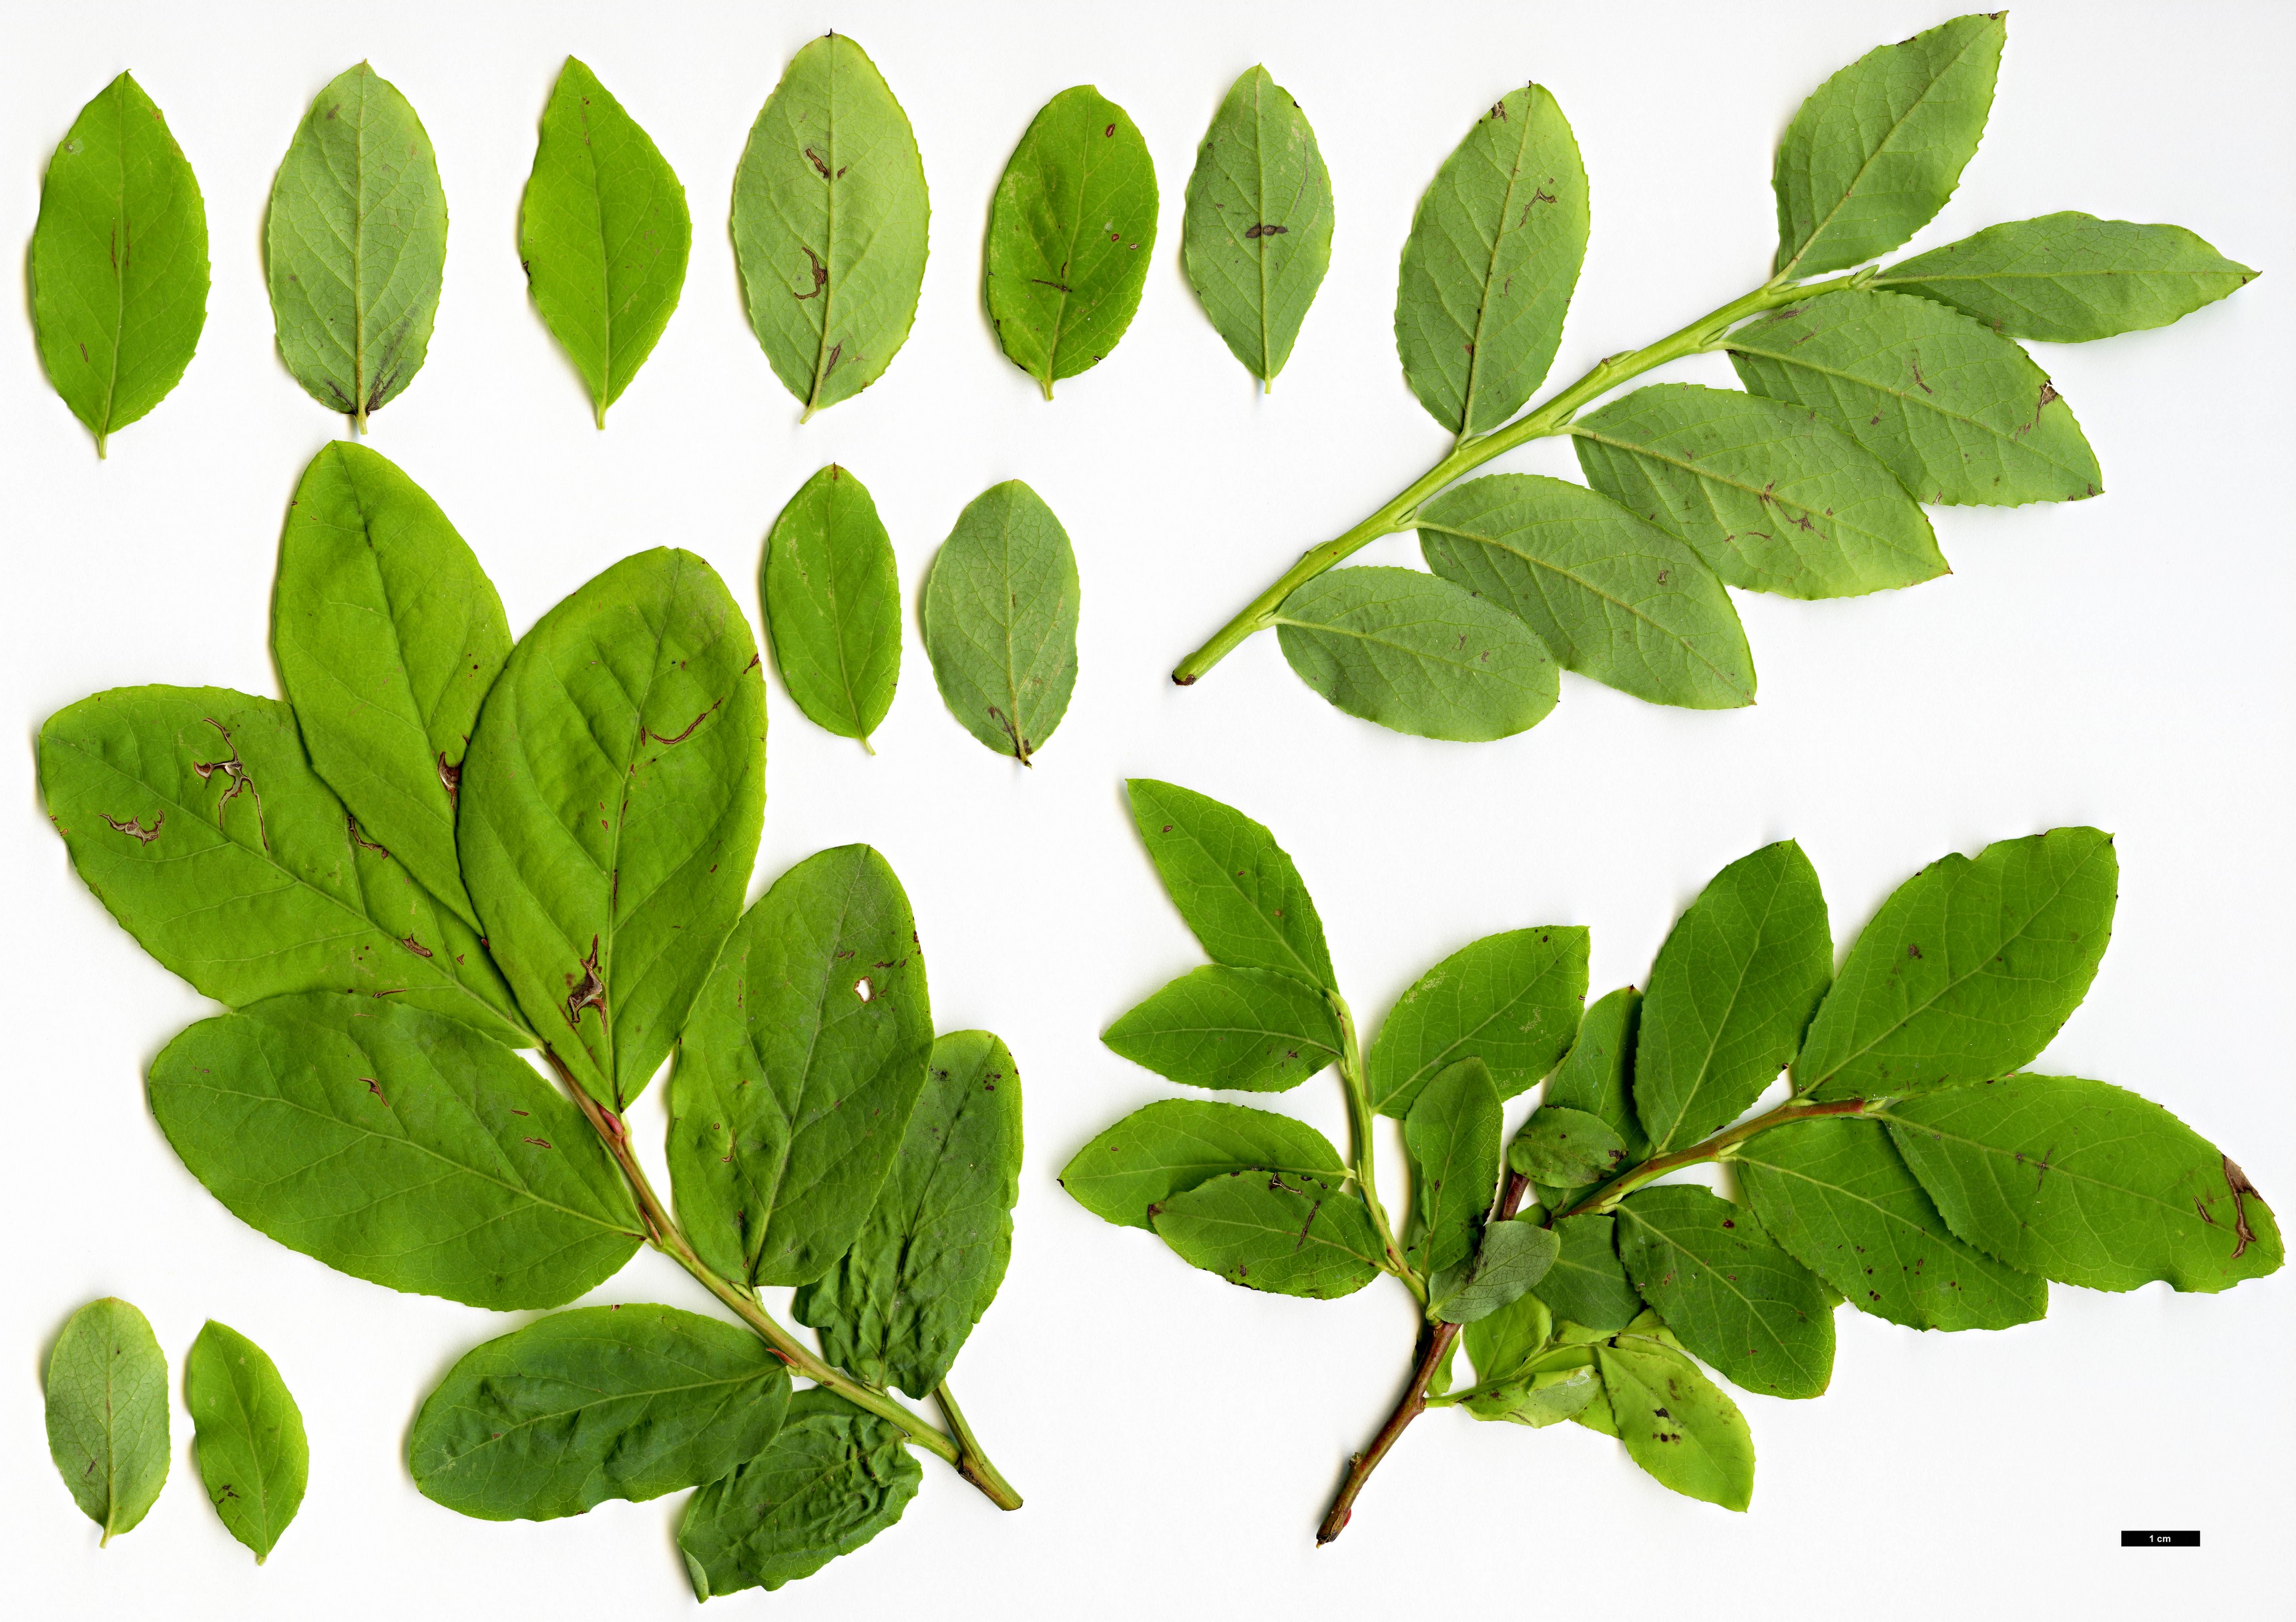 High resolution image: Family: Ericaceae - Genus: Vaccinium - Taxon: alaskaense